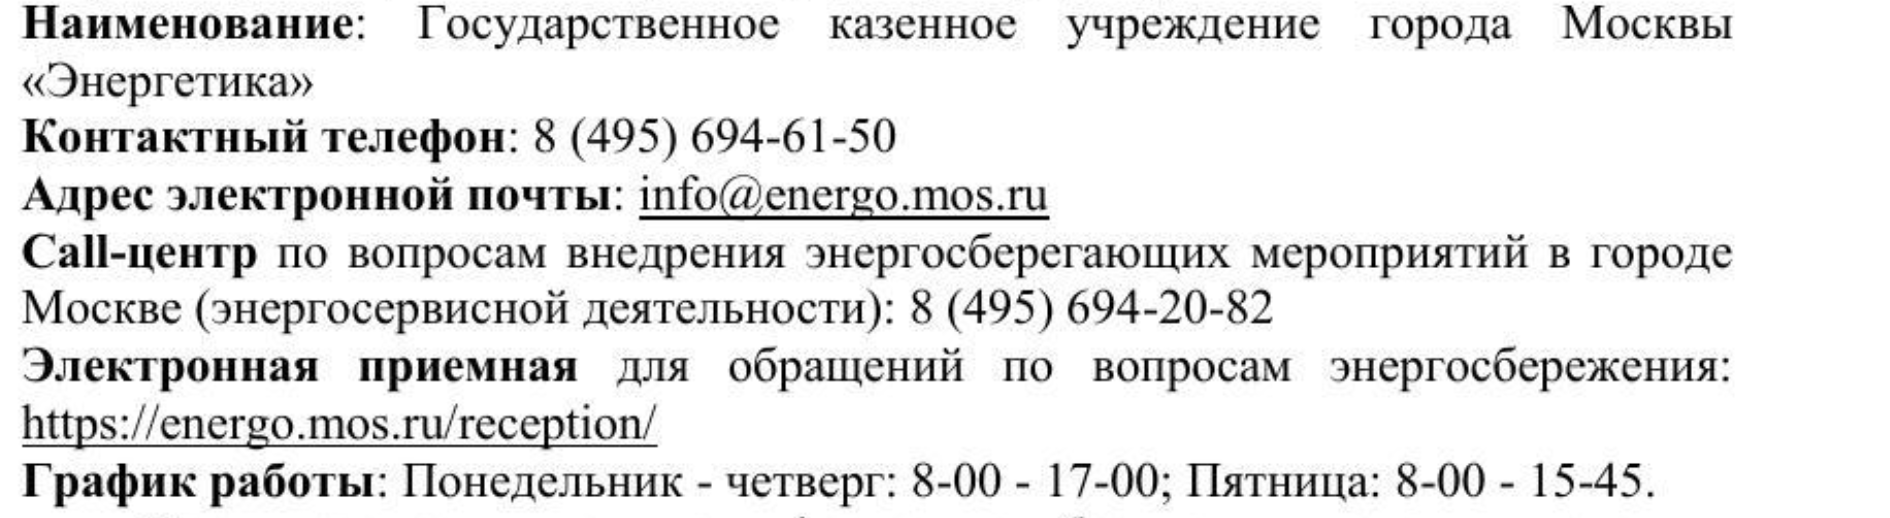 Москвичи смогут задать вопросы насчет энергосбережения в ГКУ «Энергетика»